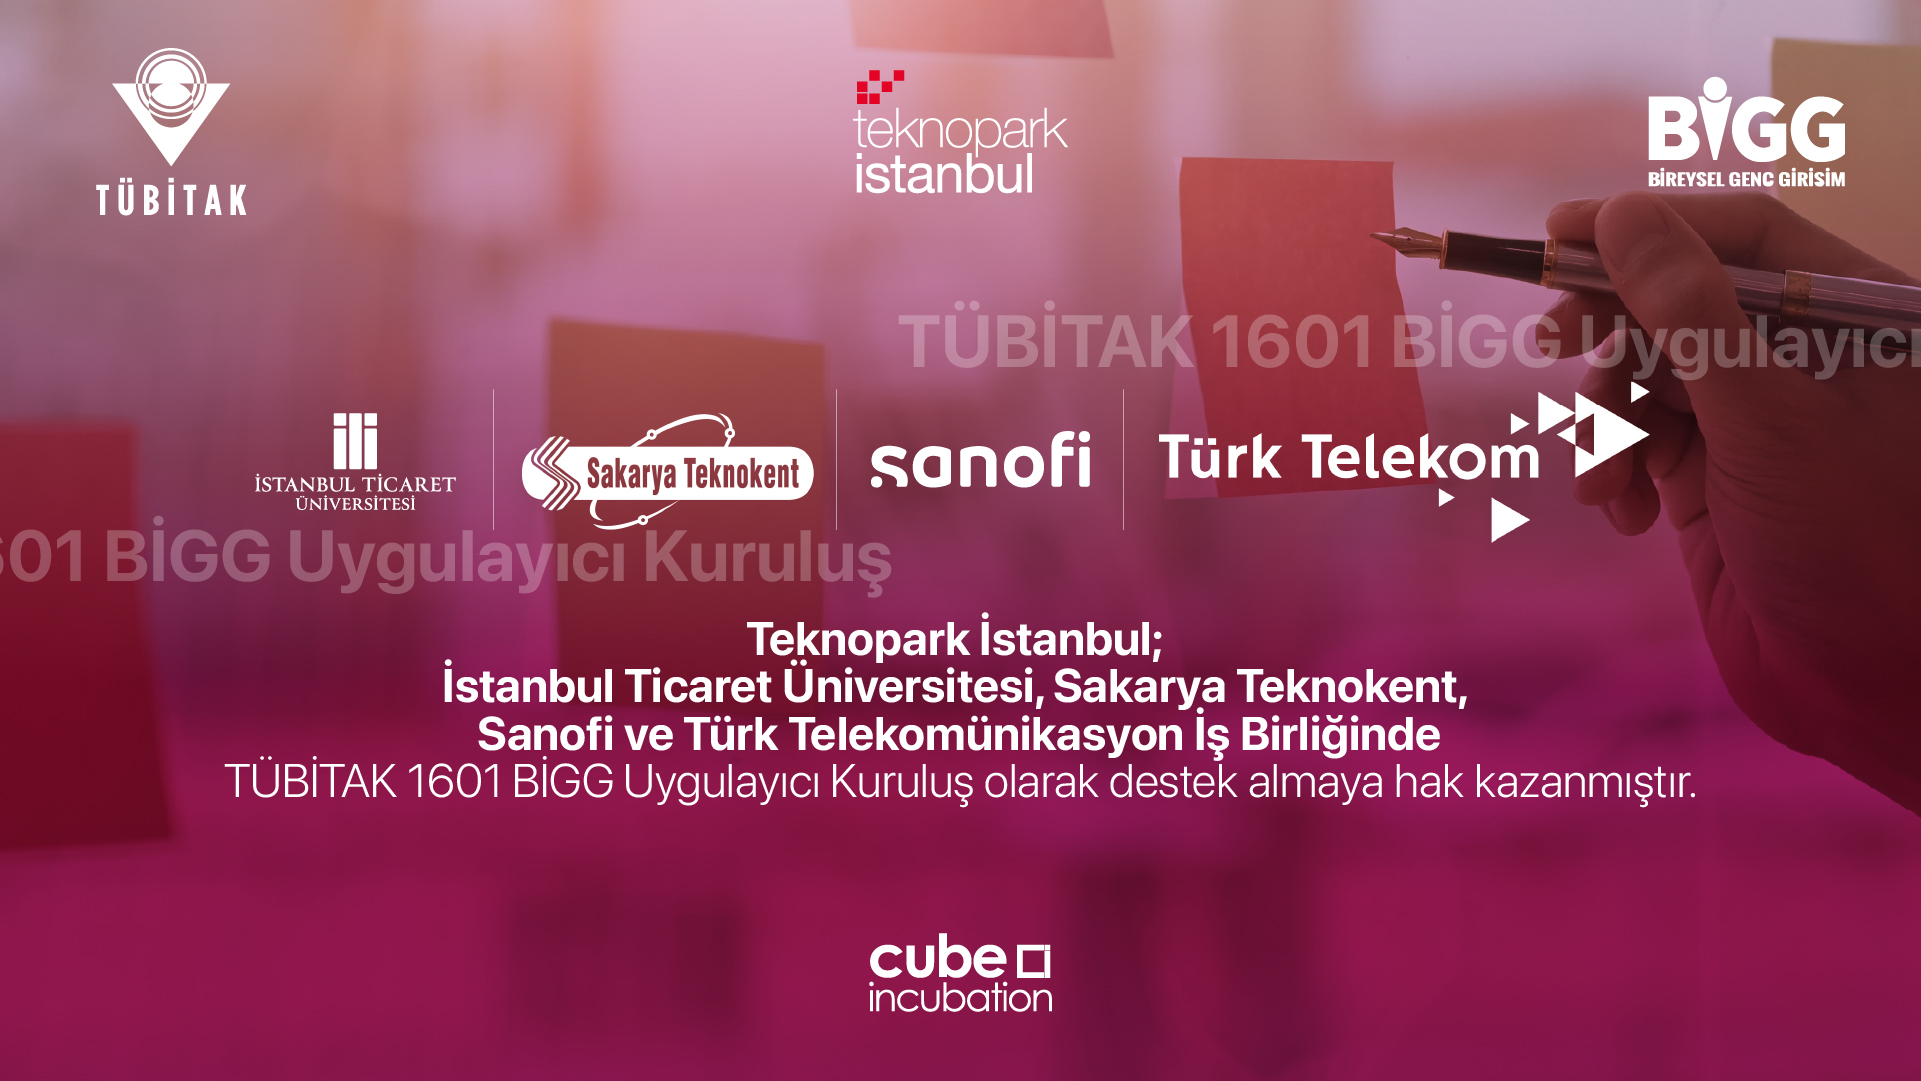 BİGG Cube Incubation ile Girişimcilere Tam Destek!